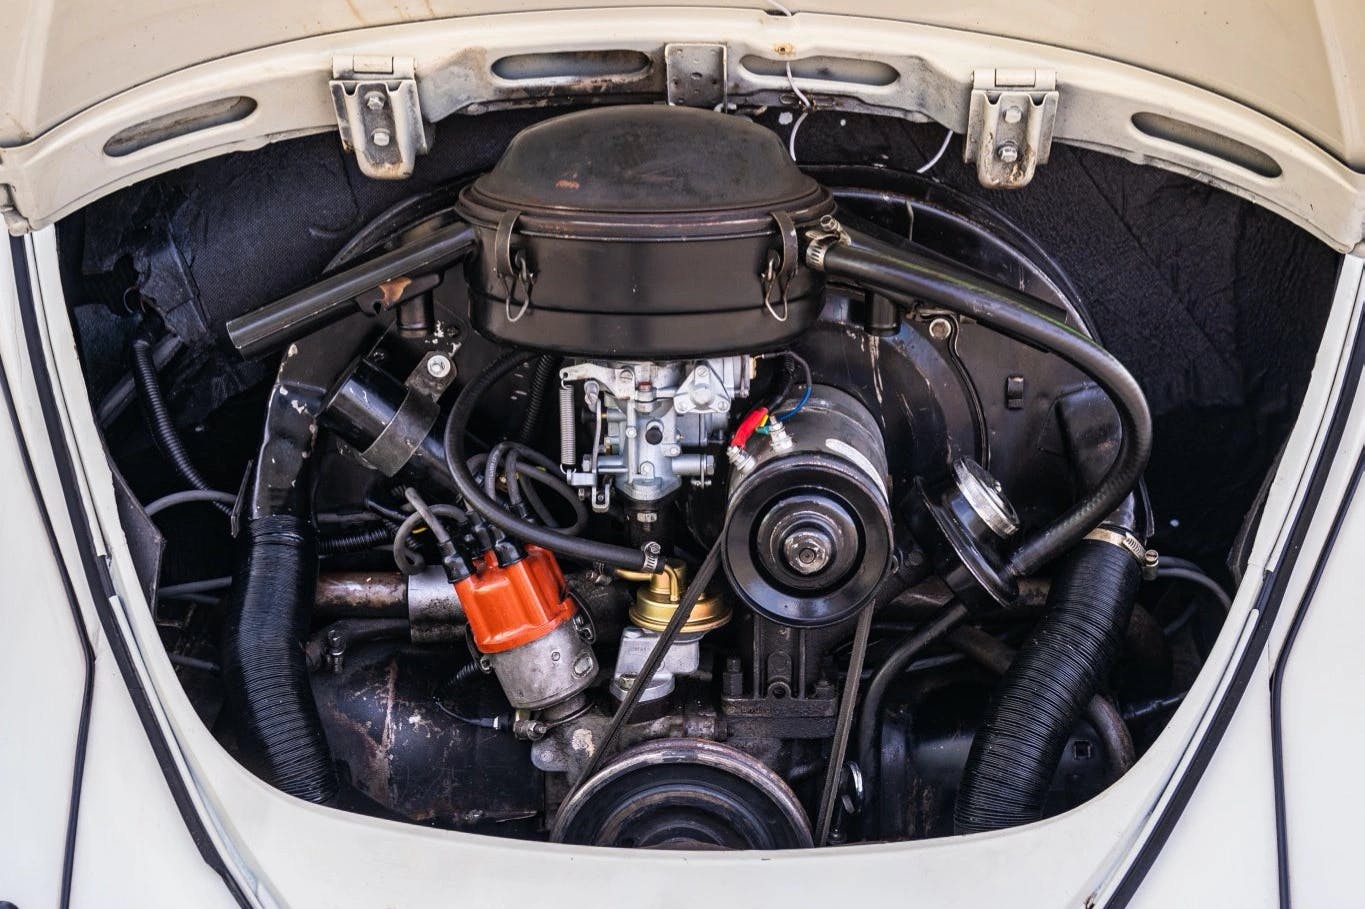 1967 VW Beetle engine